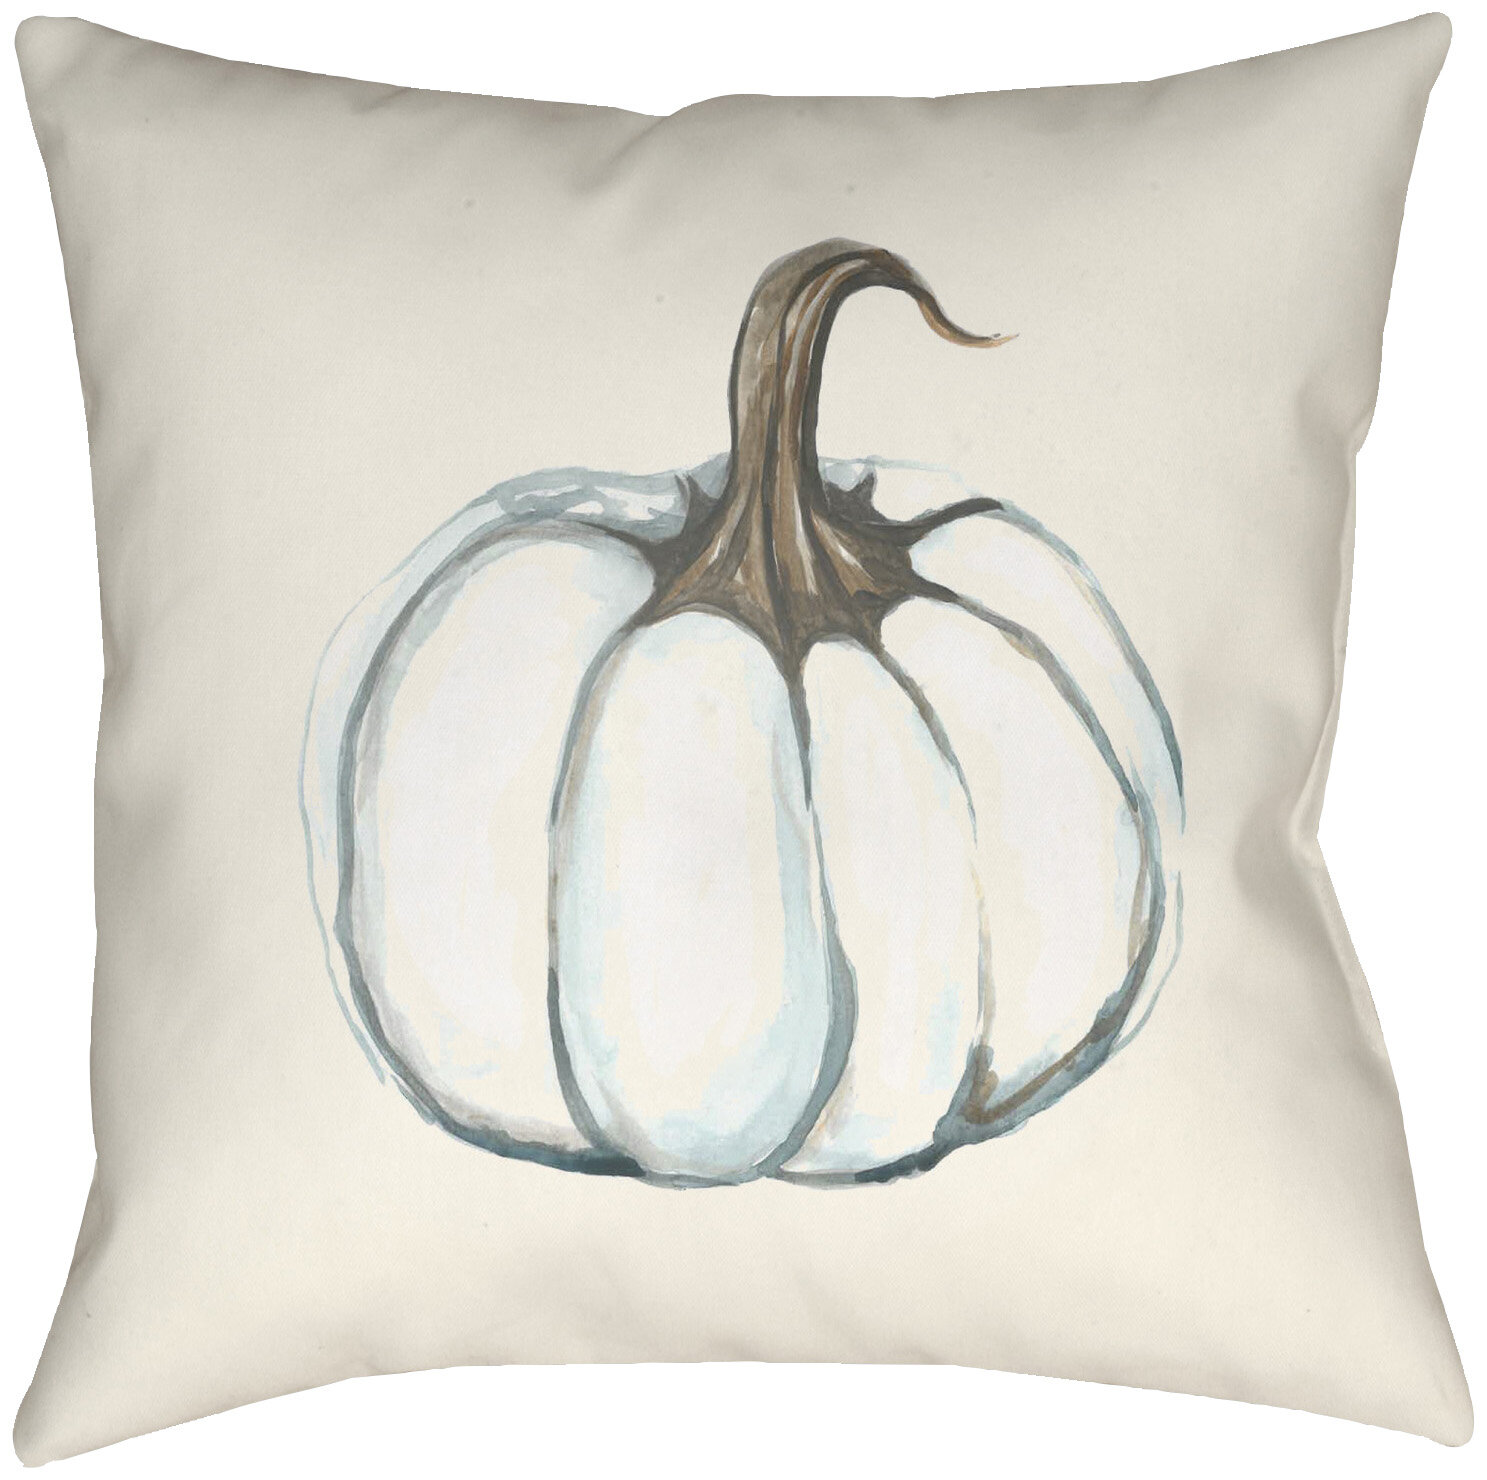 outdoor pumpkin pillow